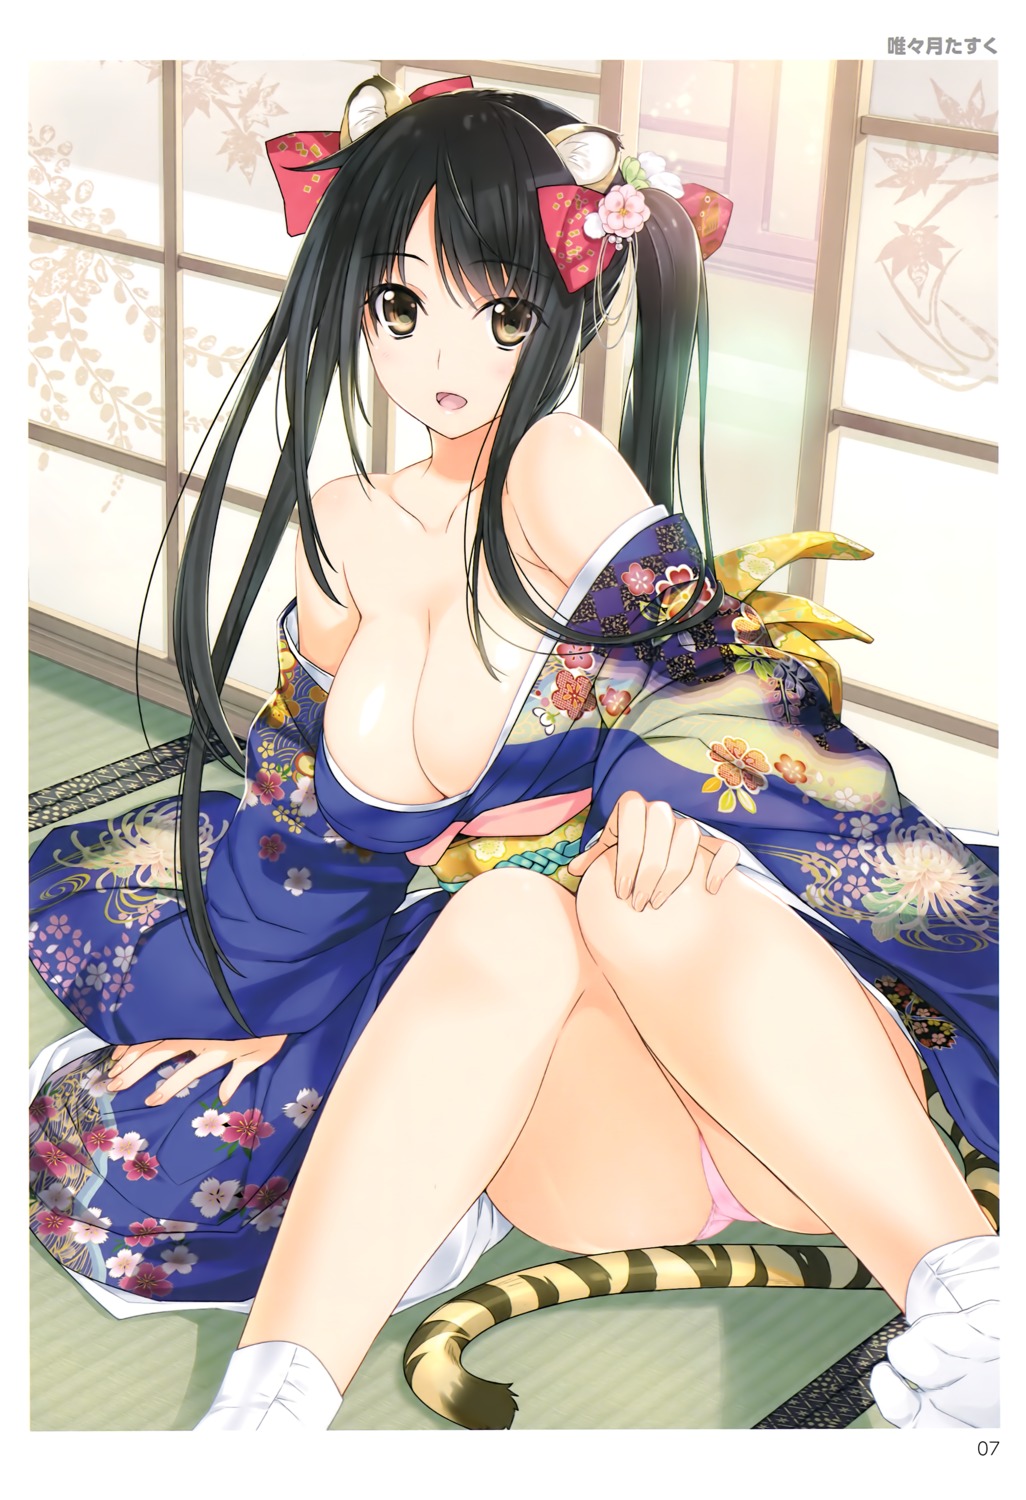 animal_ears feet iizuki_tasuku kimono no_bra open_shirt pantsu tail toranoana